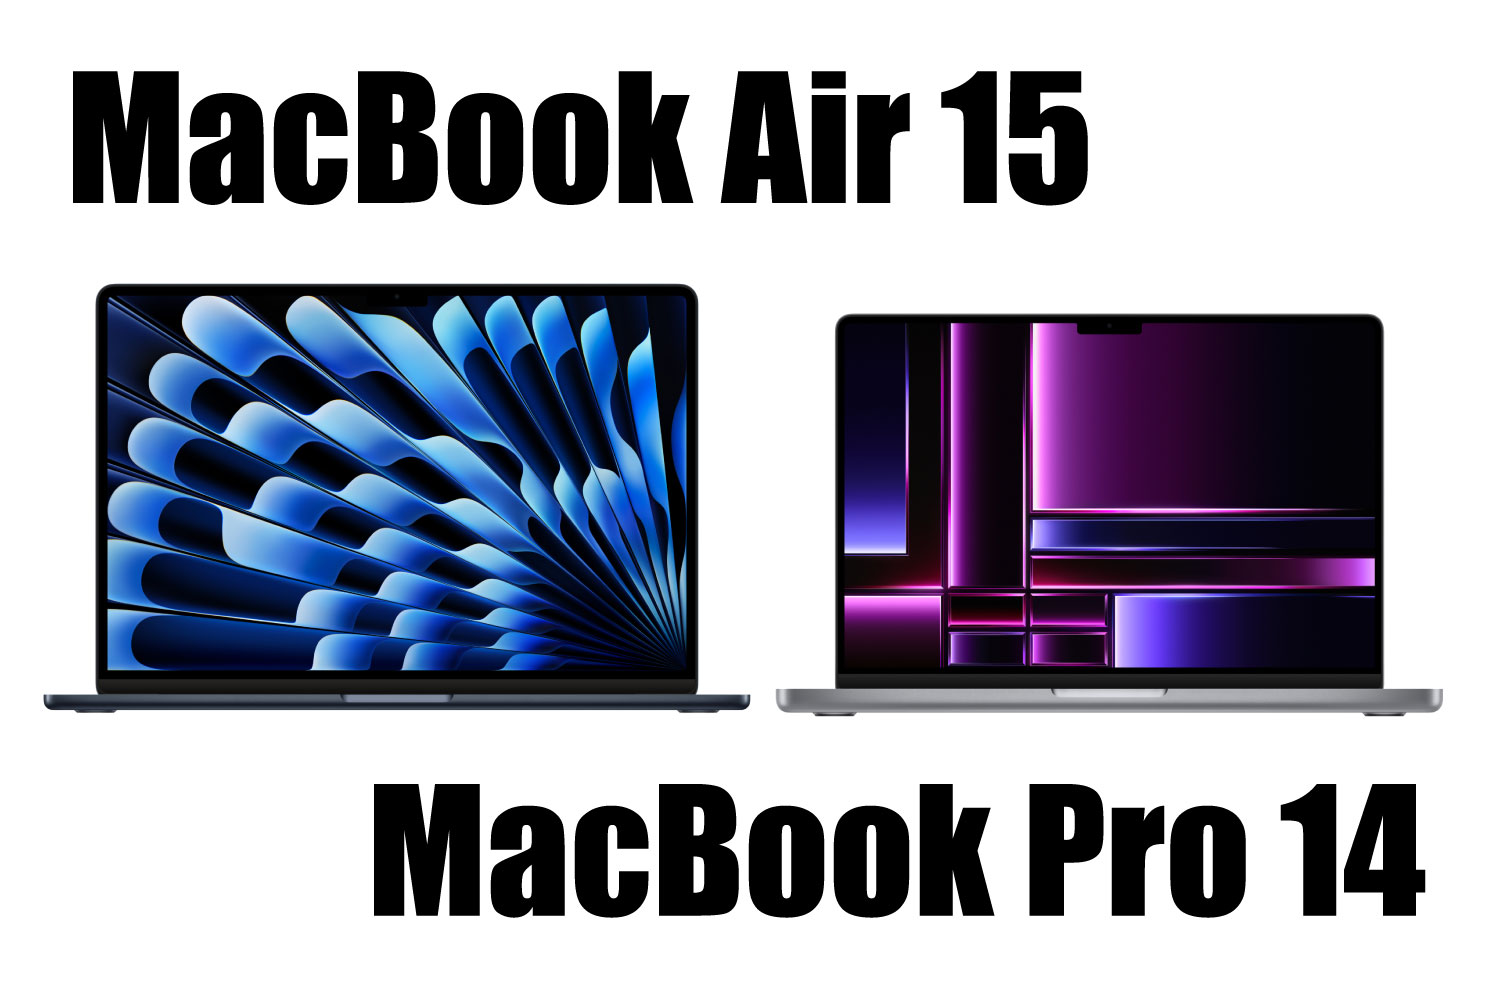 MacBook Air 15インチ、Pro 14インチ 比較